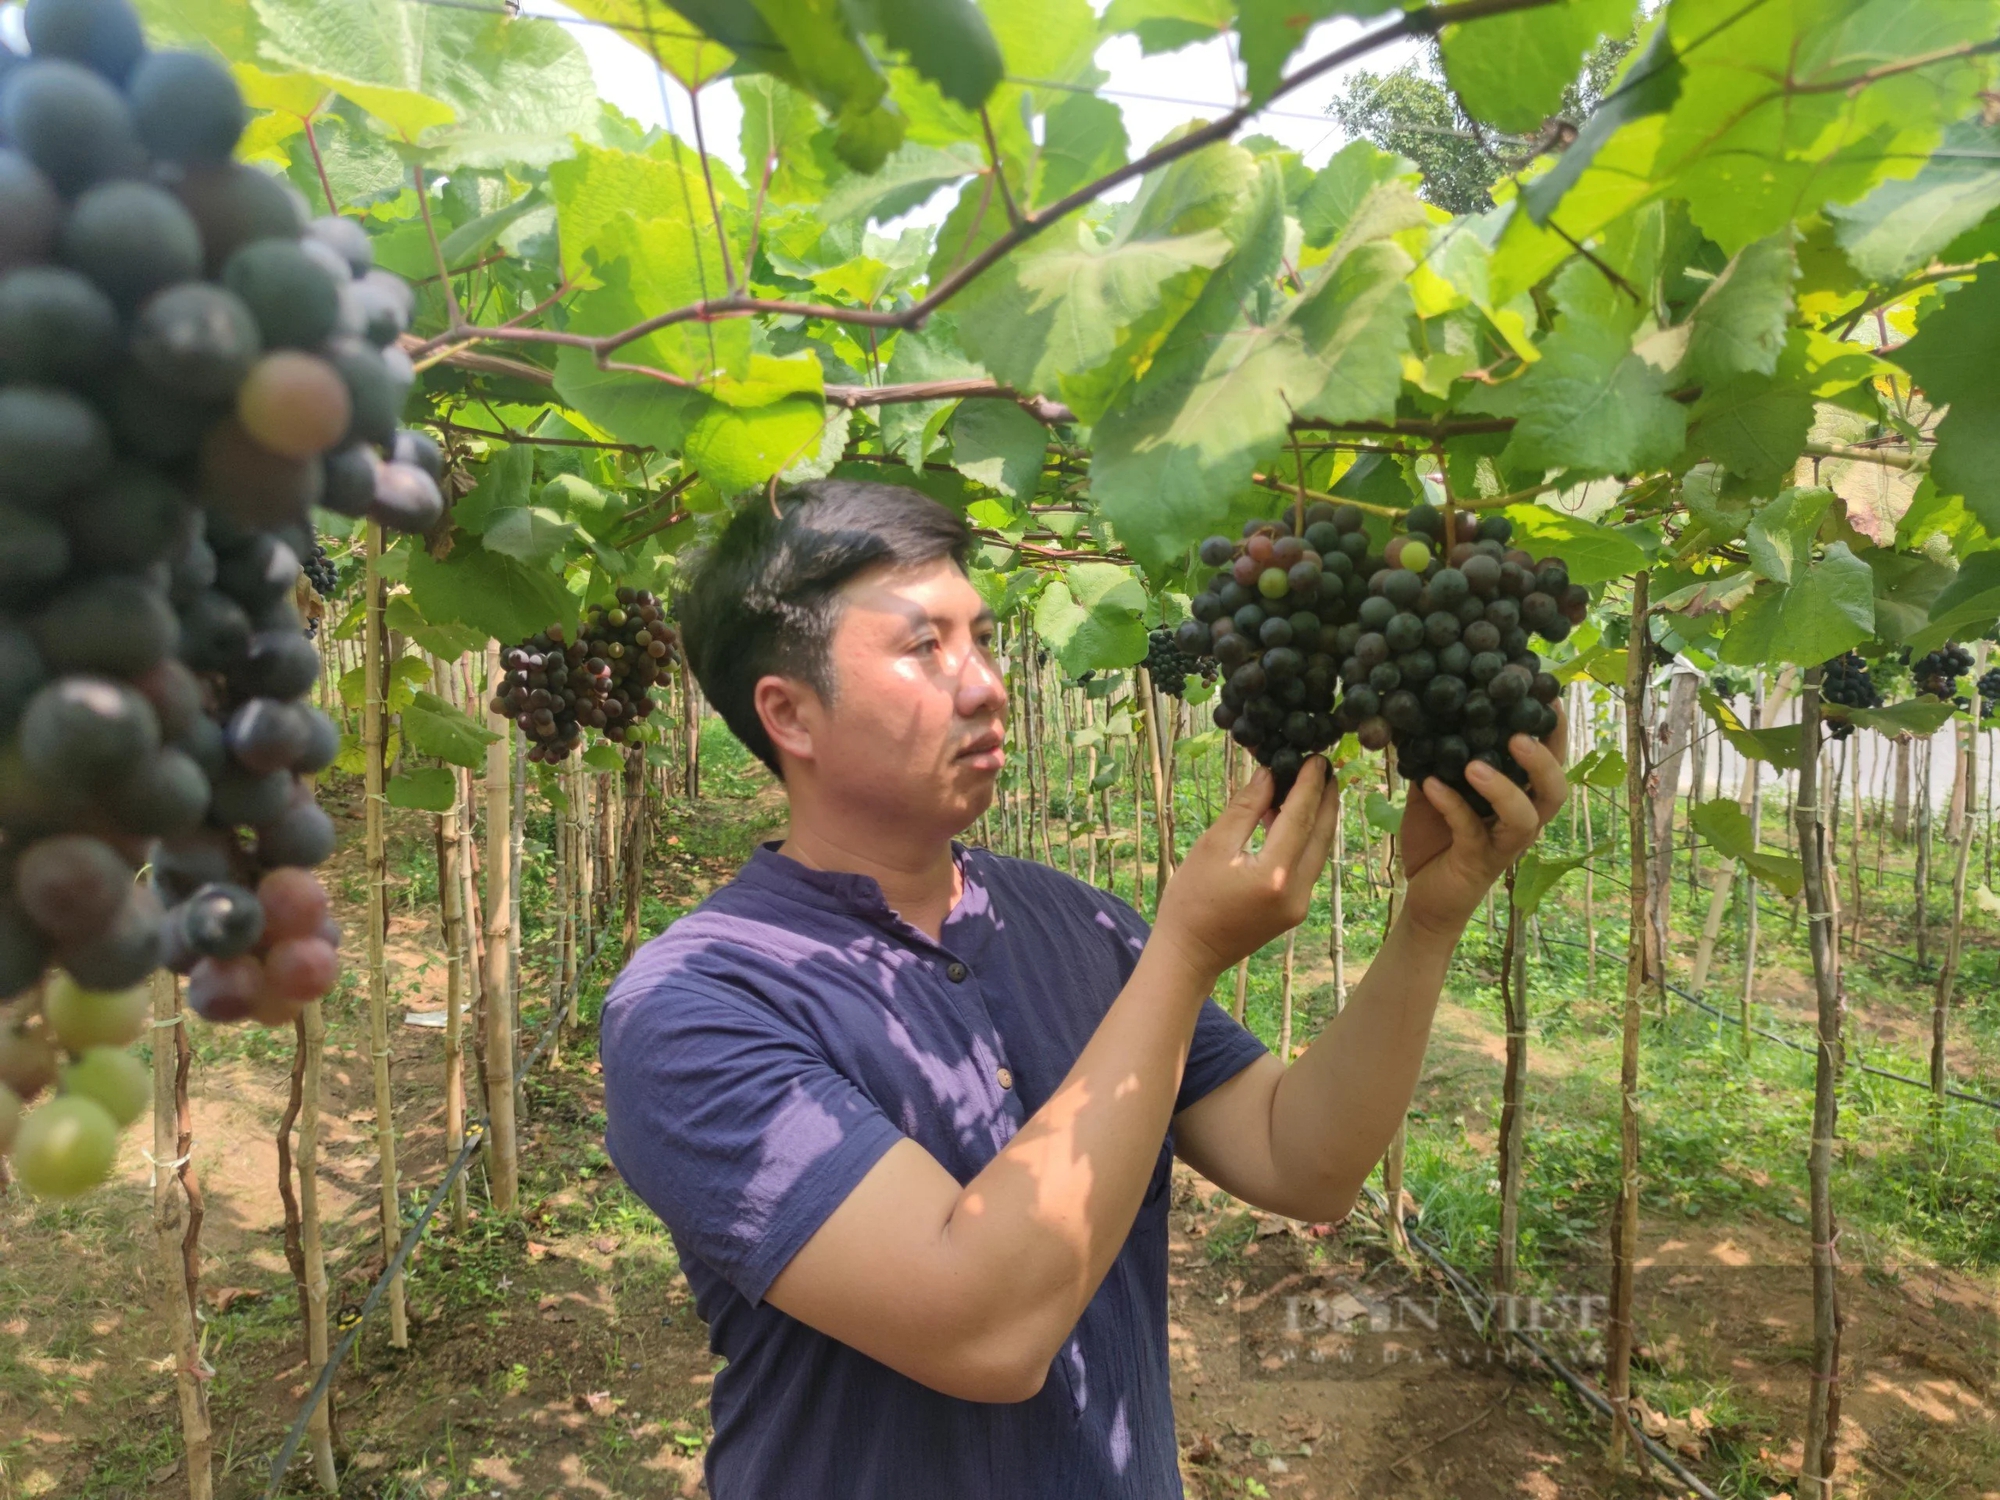 Một vườn nho chín đen nhìn đâu cũng ra trái ở Gia Lai, anh nông dân bán hàng trăm ngàn đồng/kg- Ảnh 2.